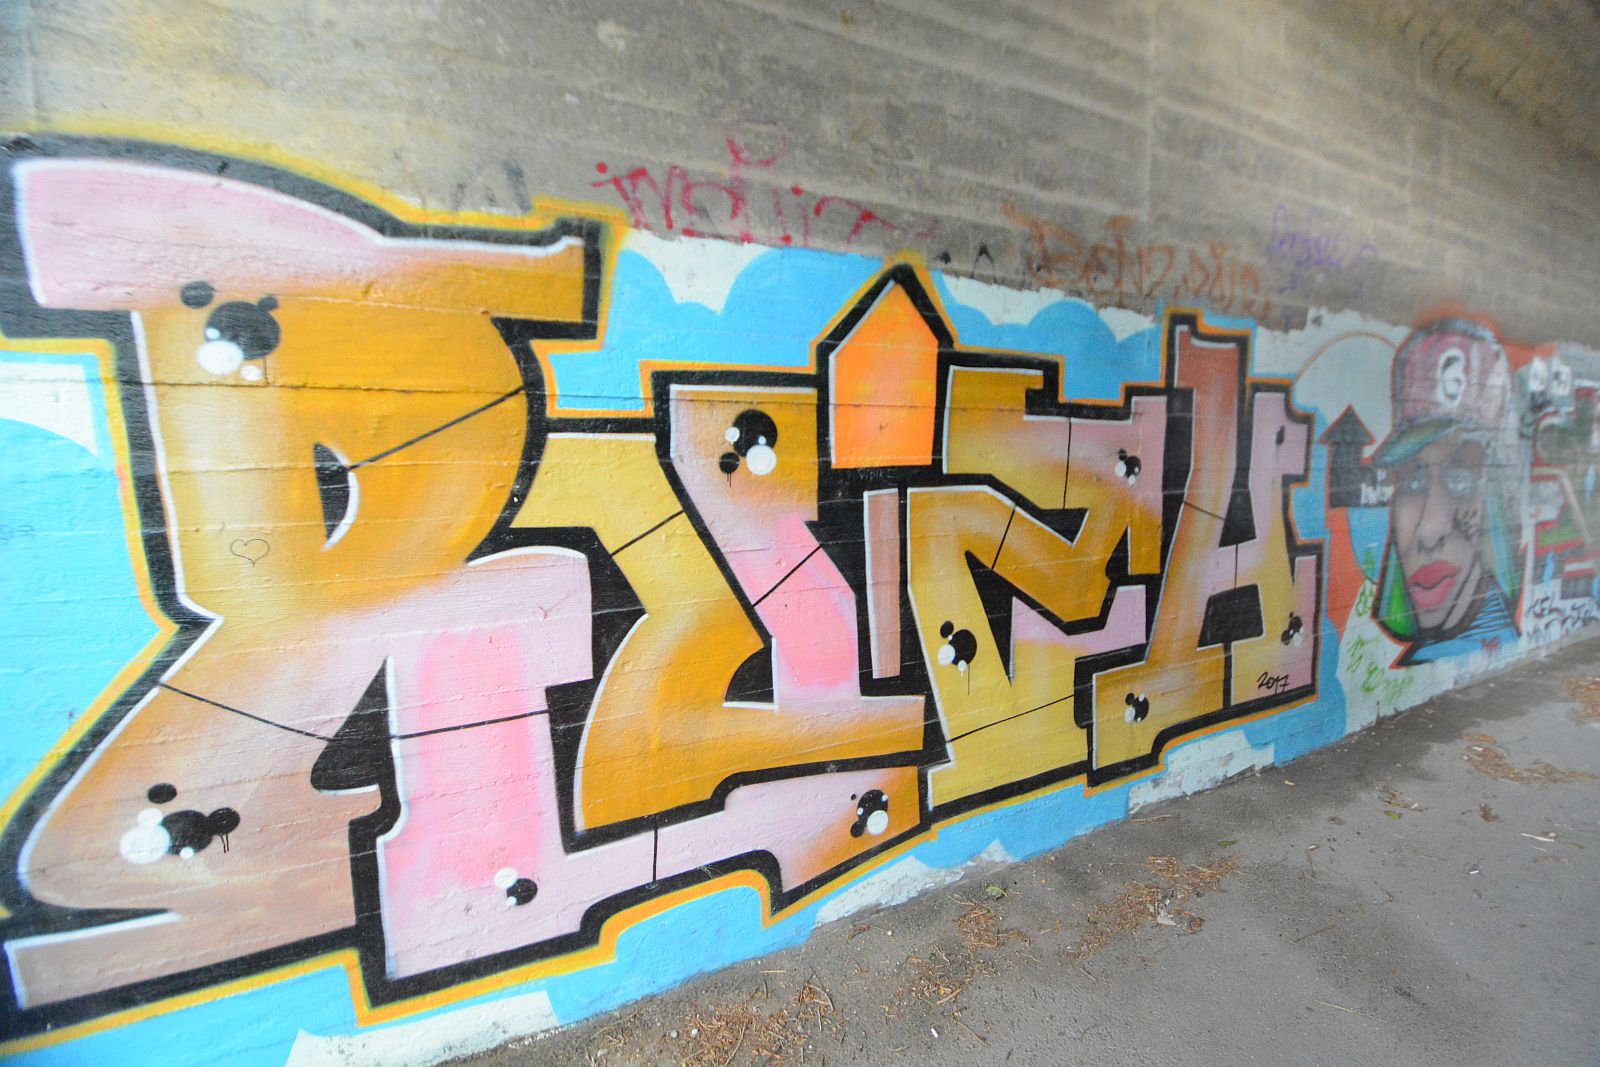 Újabb graffiti lelőhelyekre bukkantunk Székesfehérváron